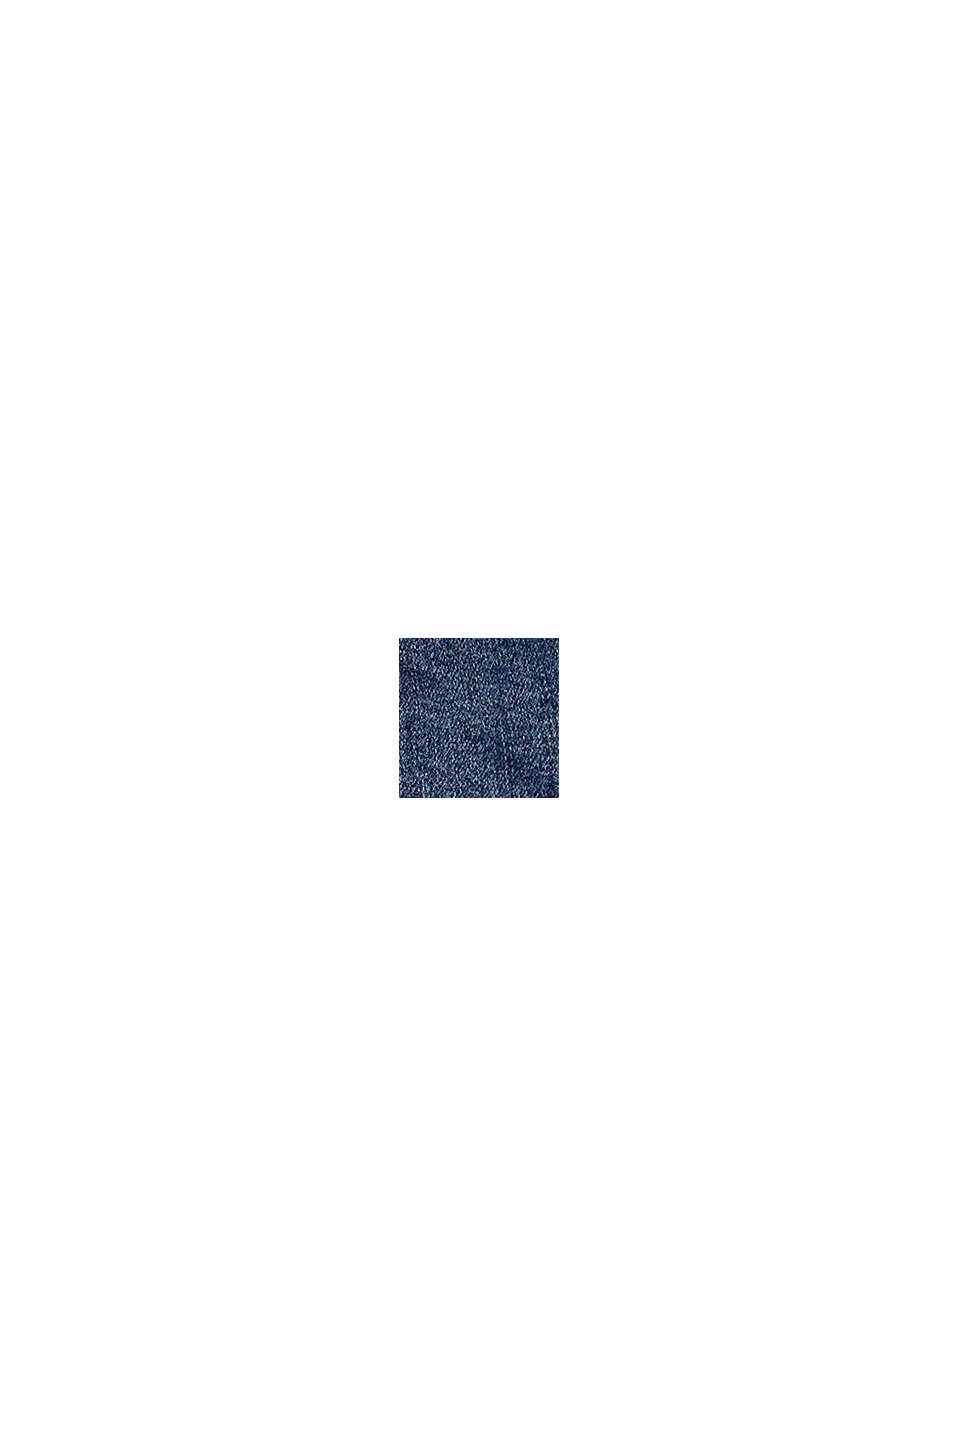 Dżinsowe szorty z bawełny, z regulowanym pasem, BLUE MEDIUM WASHED, swatch